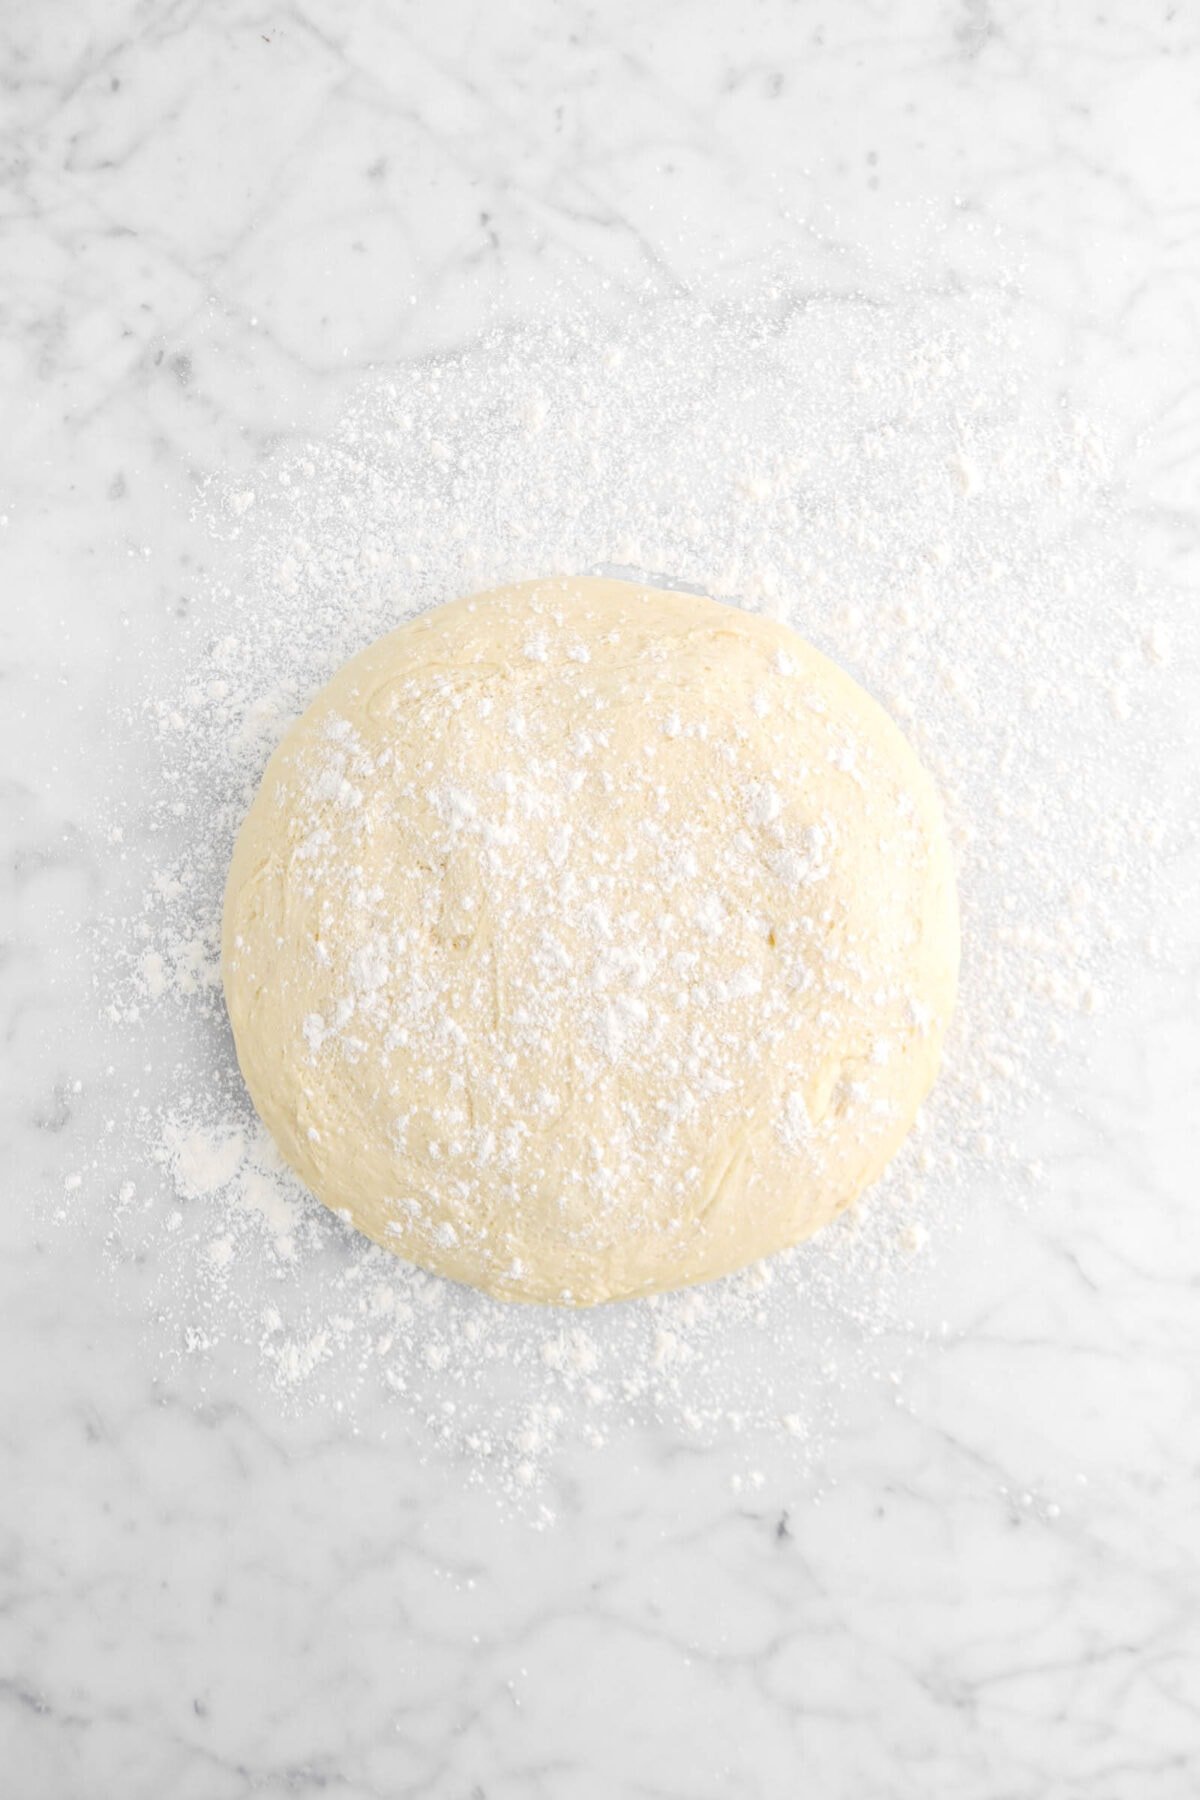 dough on floured marble surface